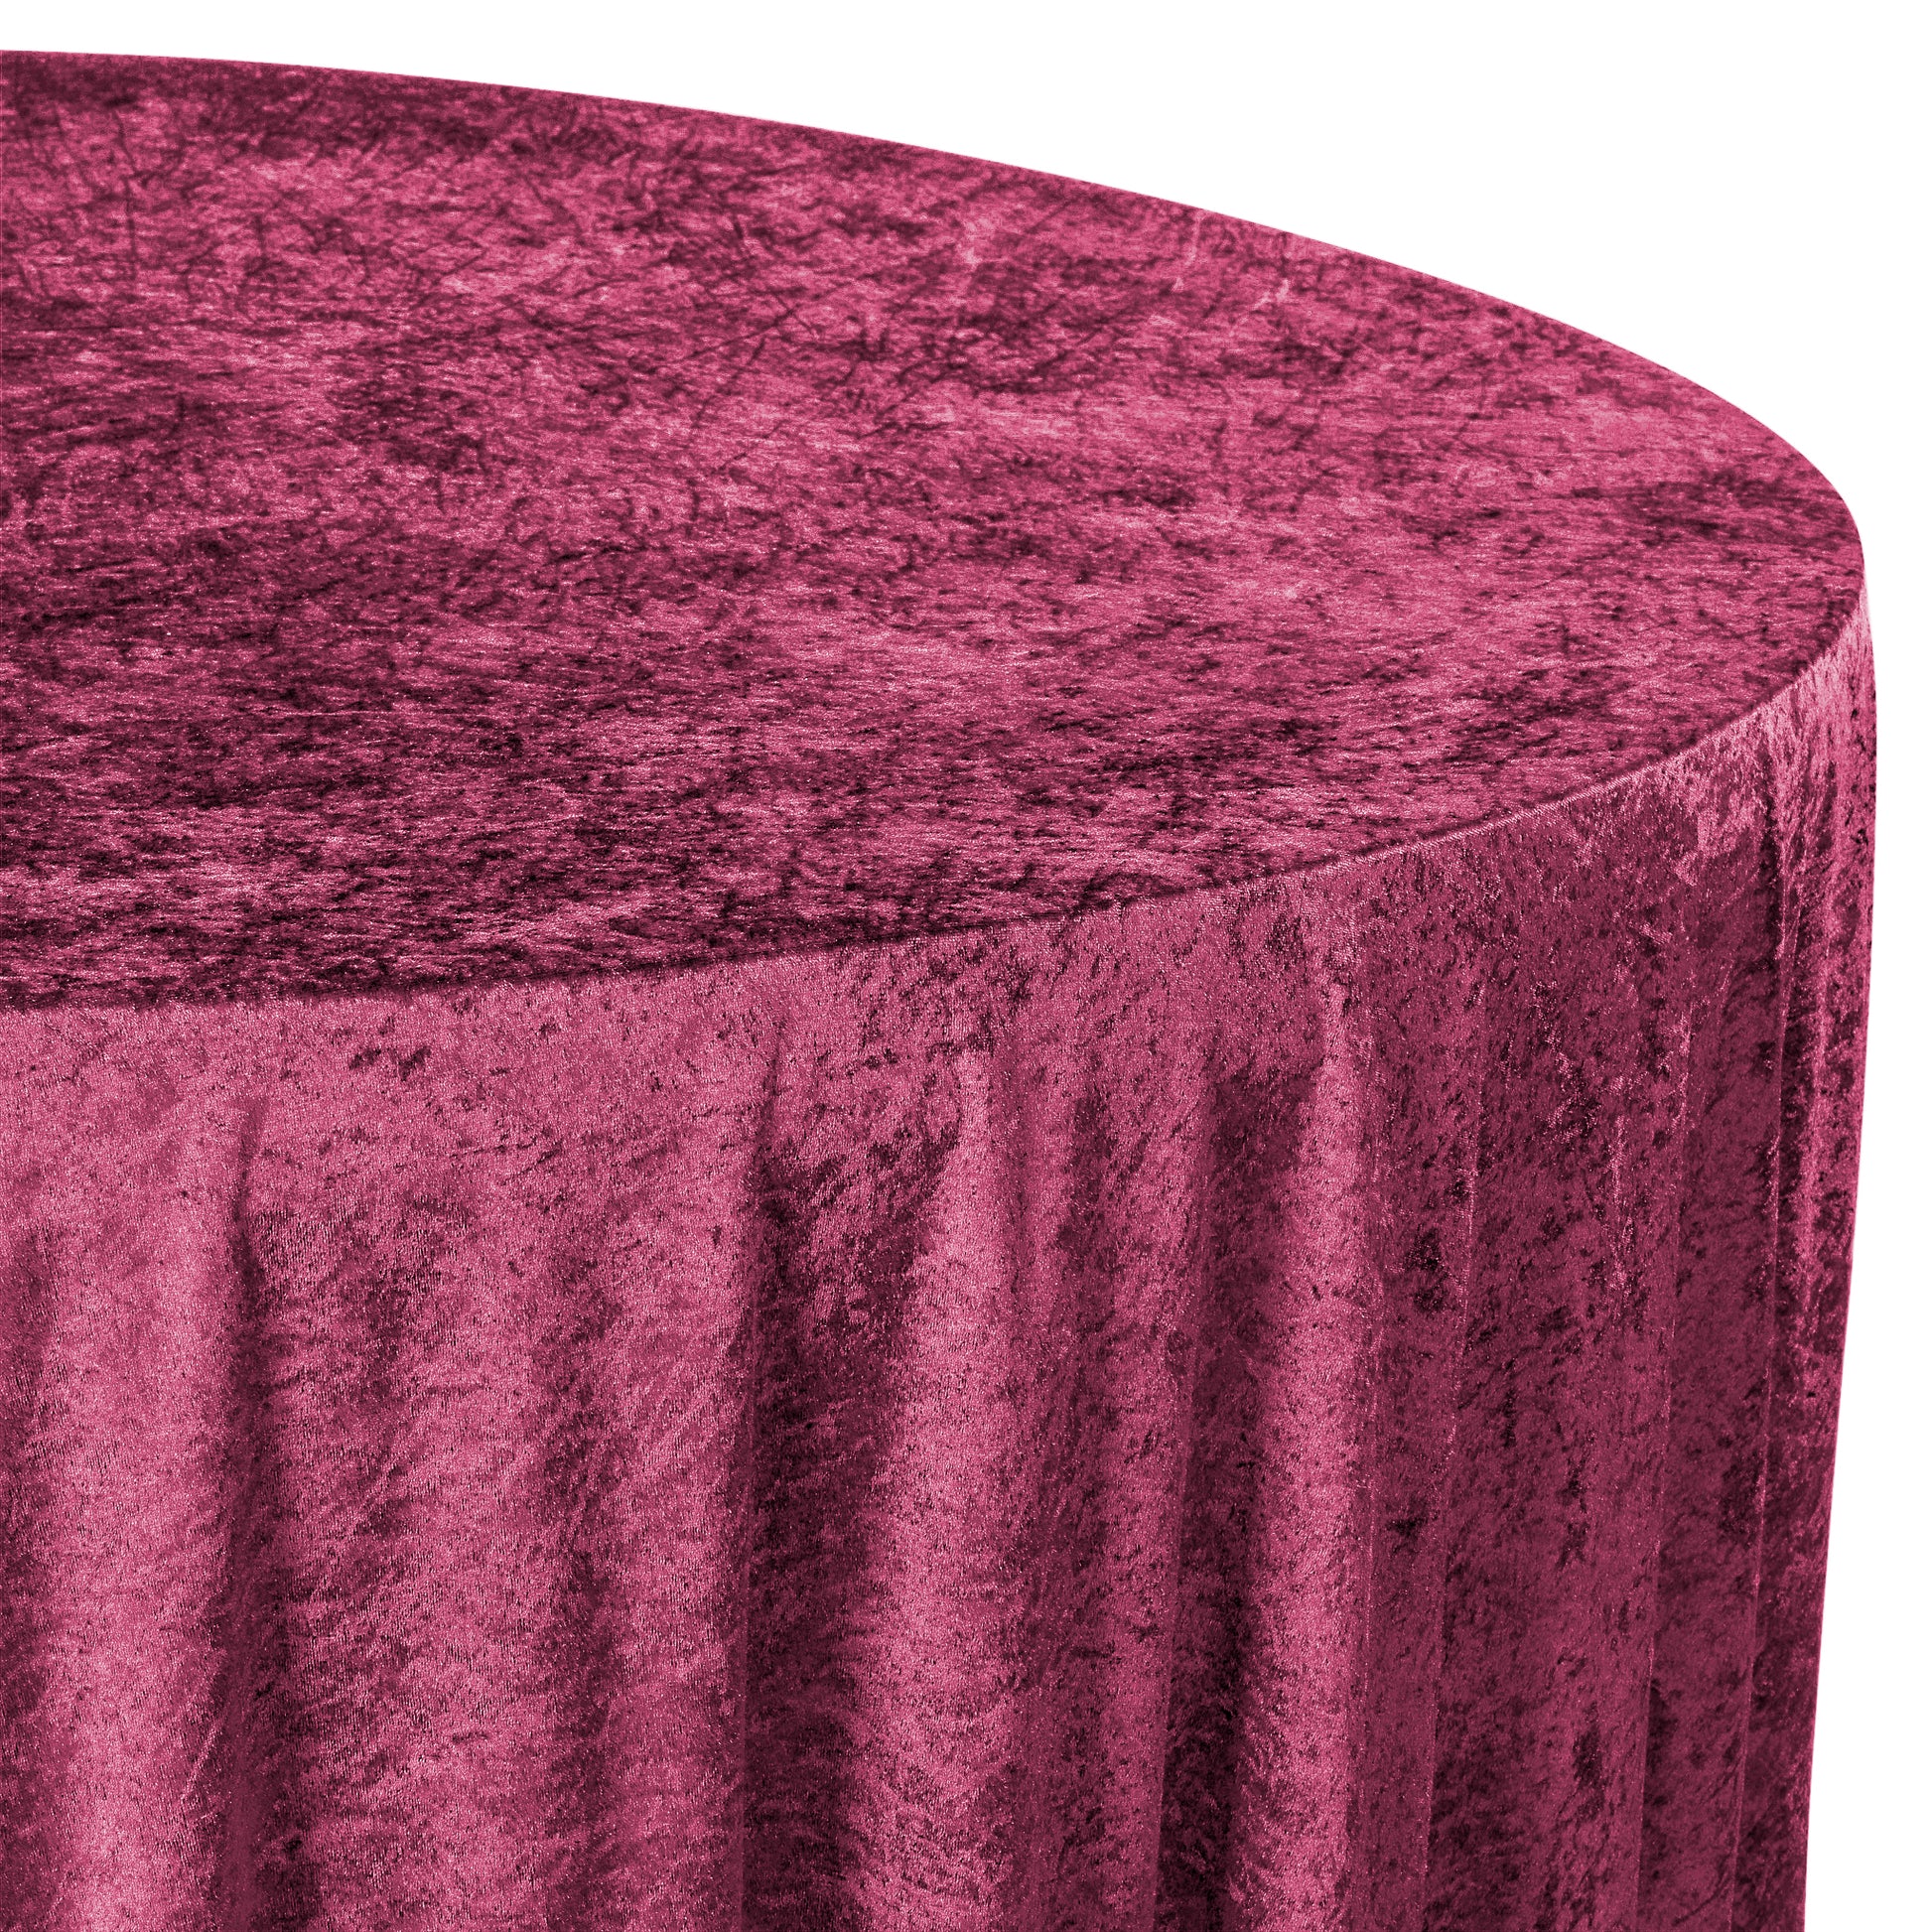 Velvet 120" Round Tablecloth - Burgundy - CV Linens